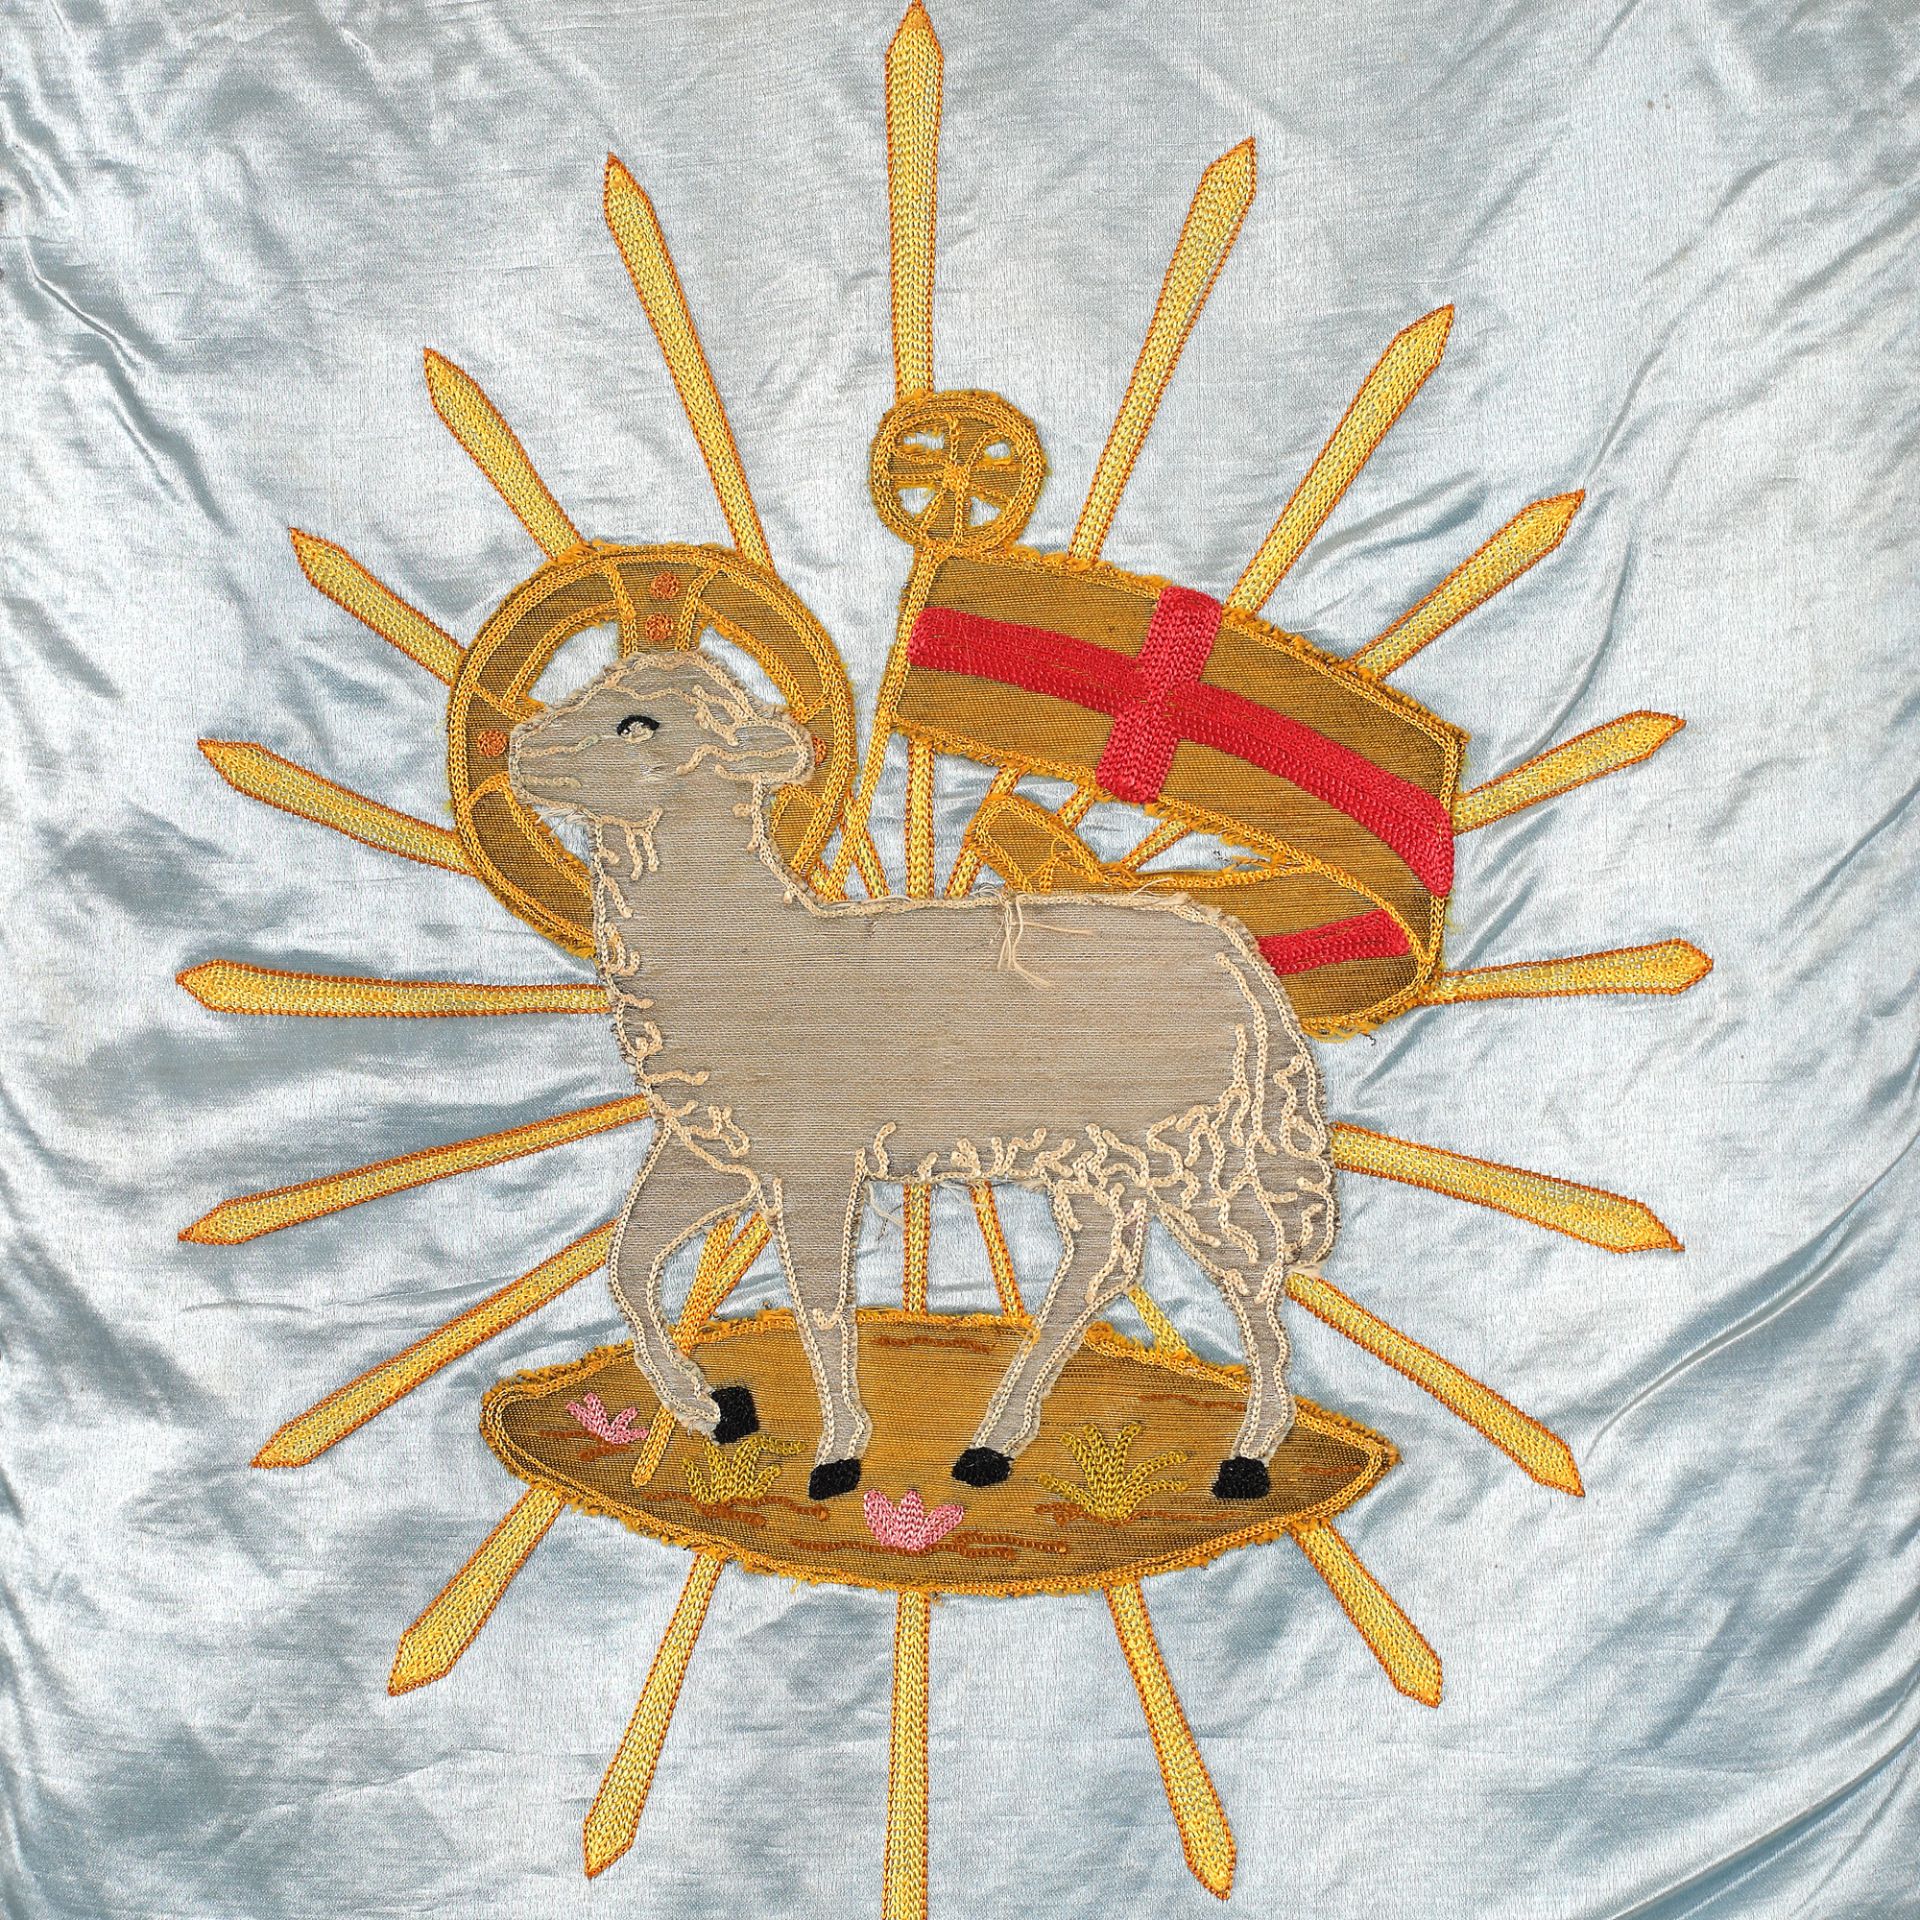 Catholic banner depicting the Holy Lamb - Image 2 of 2